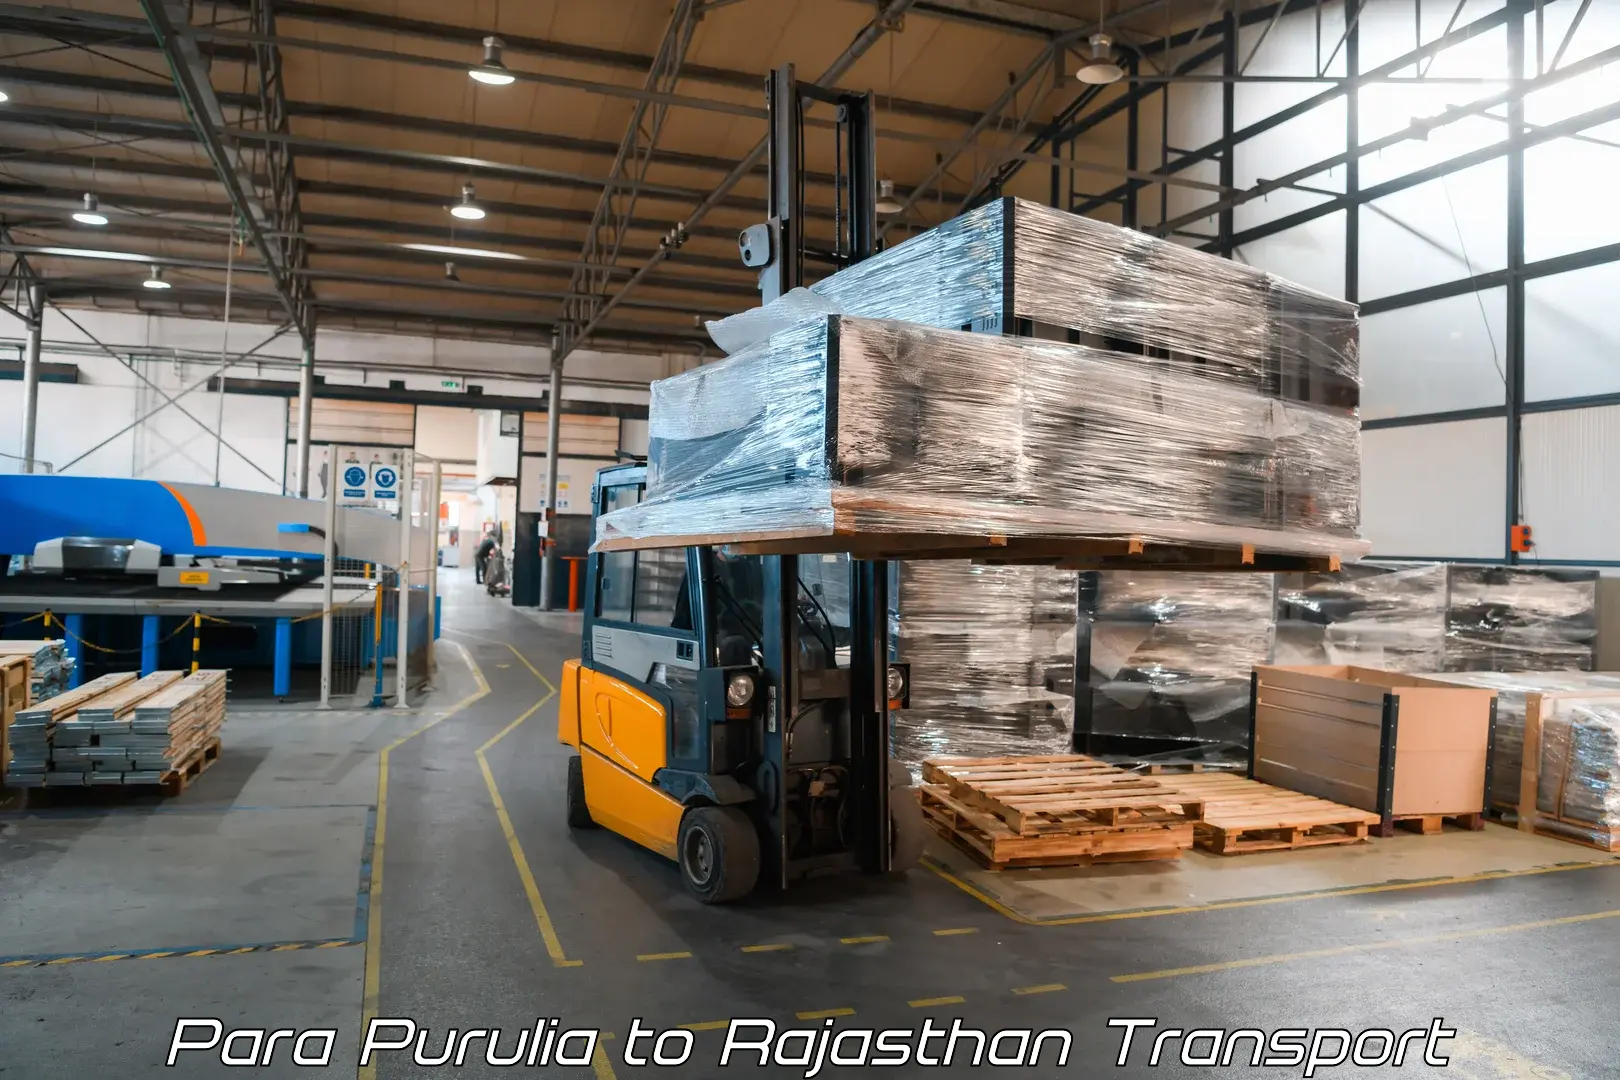 Furniture transport service Para Purulia to Rajasthan